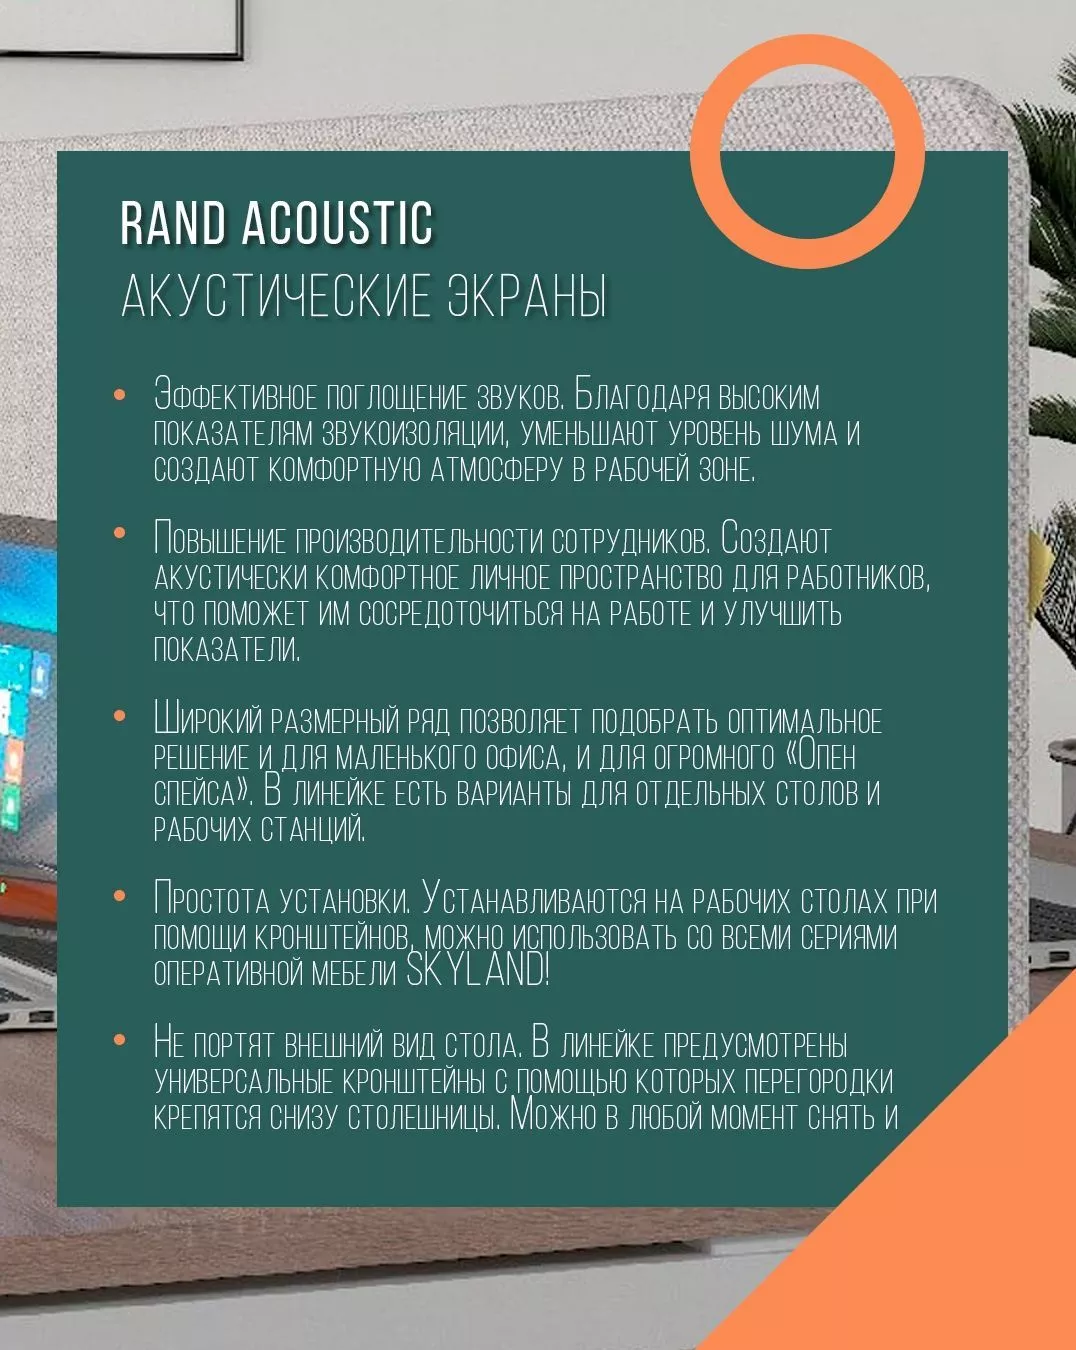 Экран акустический (фронтальный) RAND Acoustic XAFP 1460